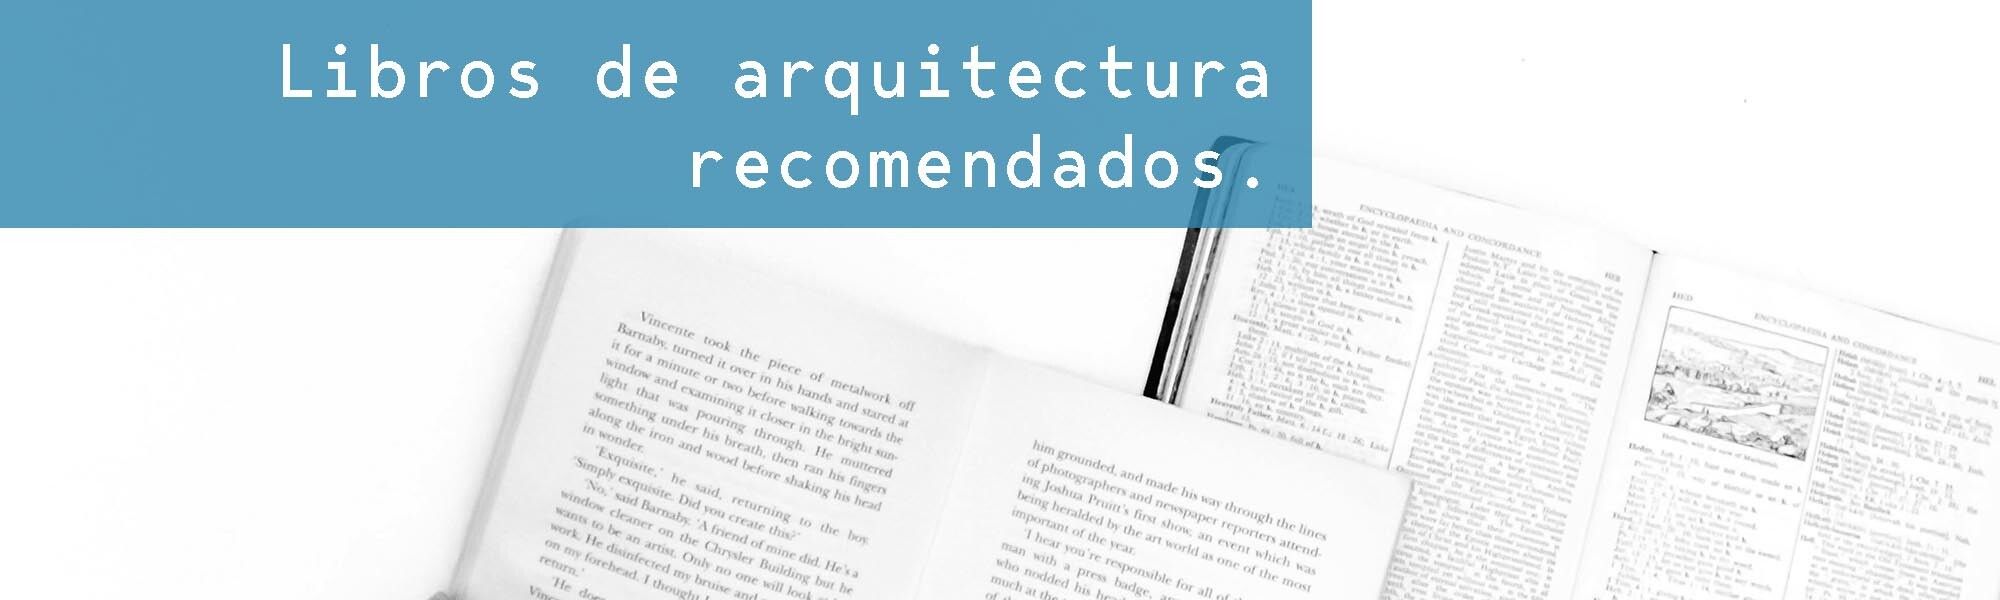 titulo libros arquitectura c7b656b6 artículos sobre diseño